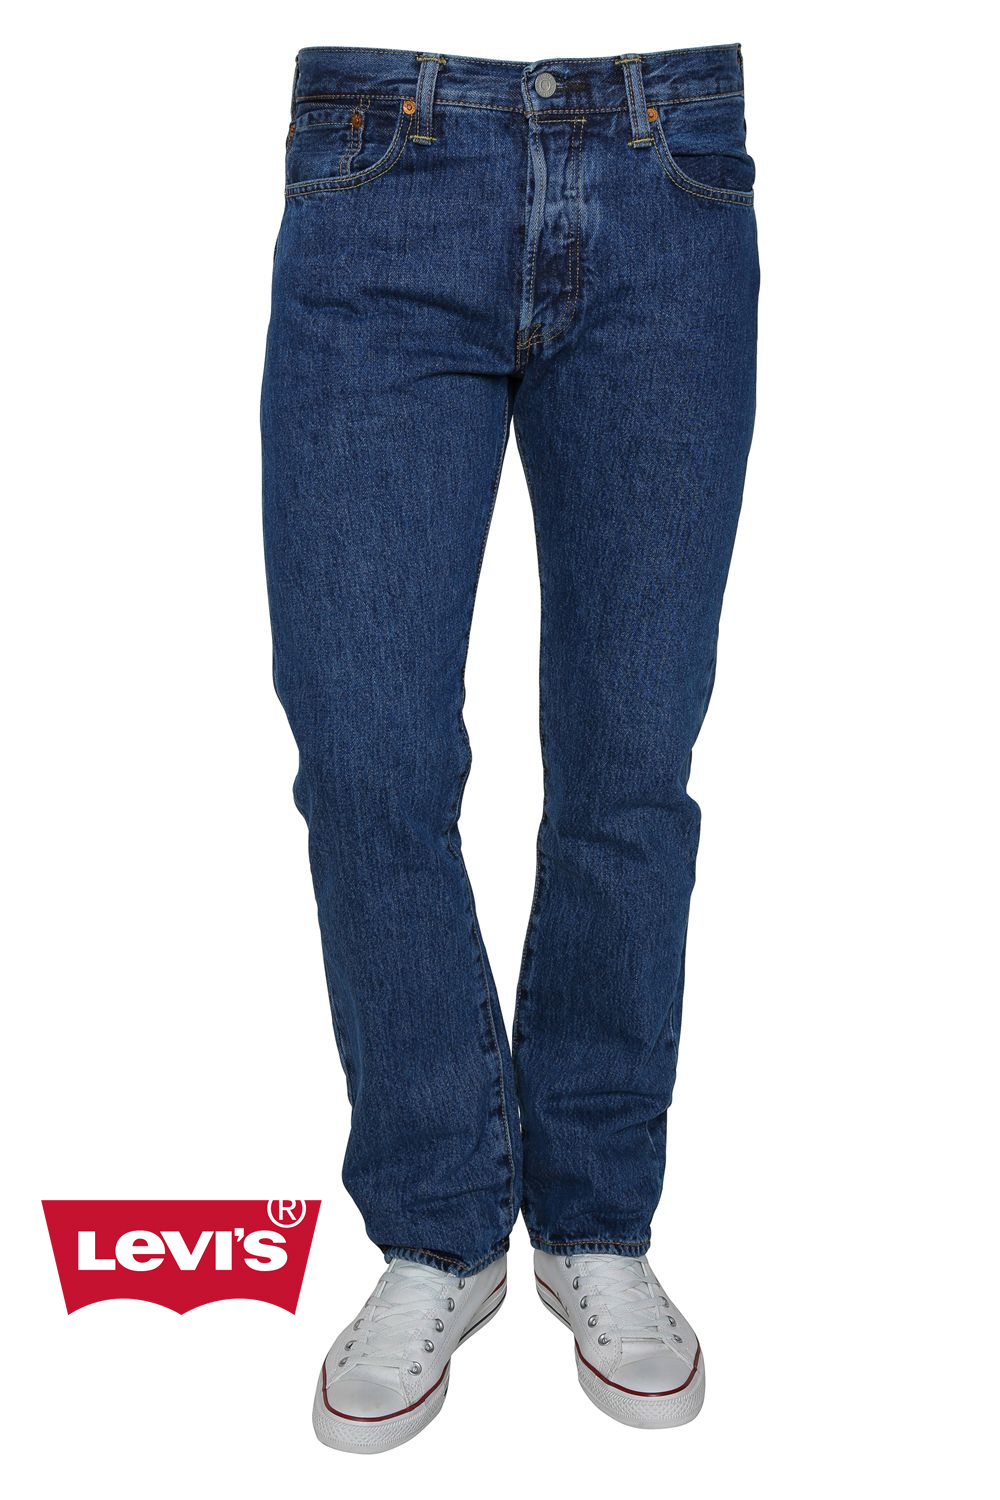 levis 501 original jeans